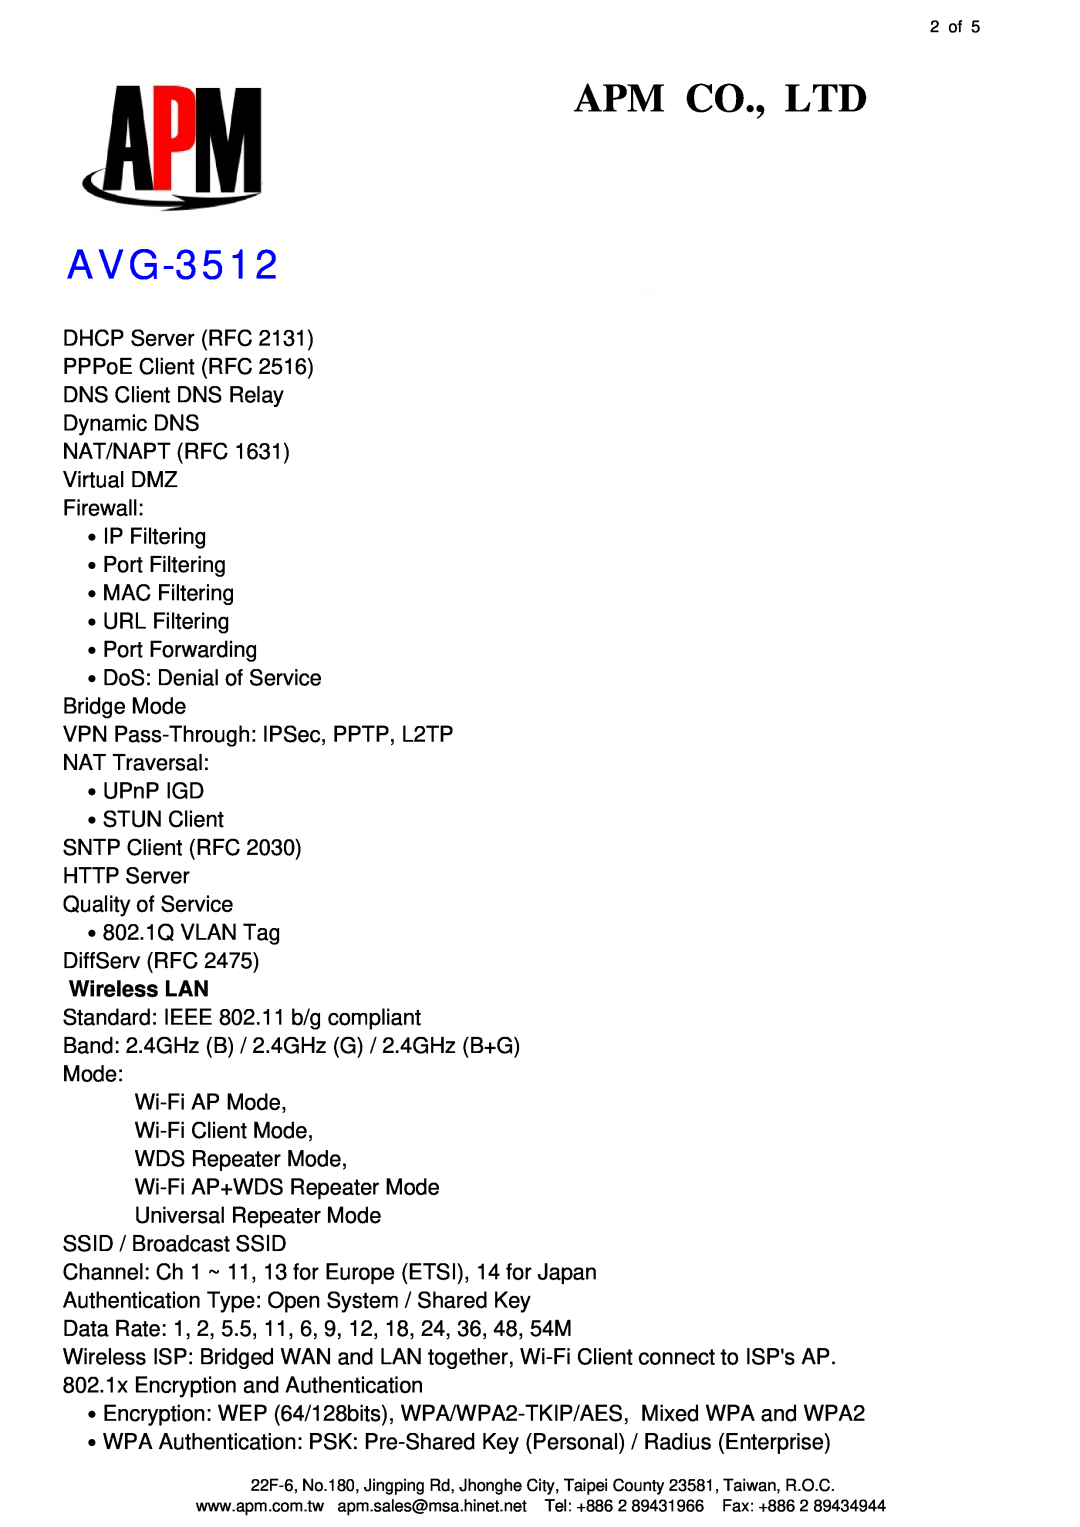 APM AVG-3512 manual Wireless LAN 